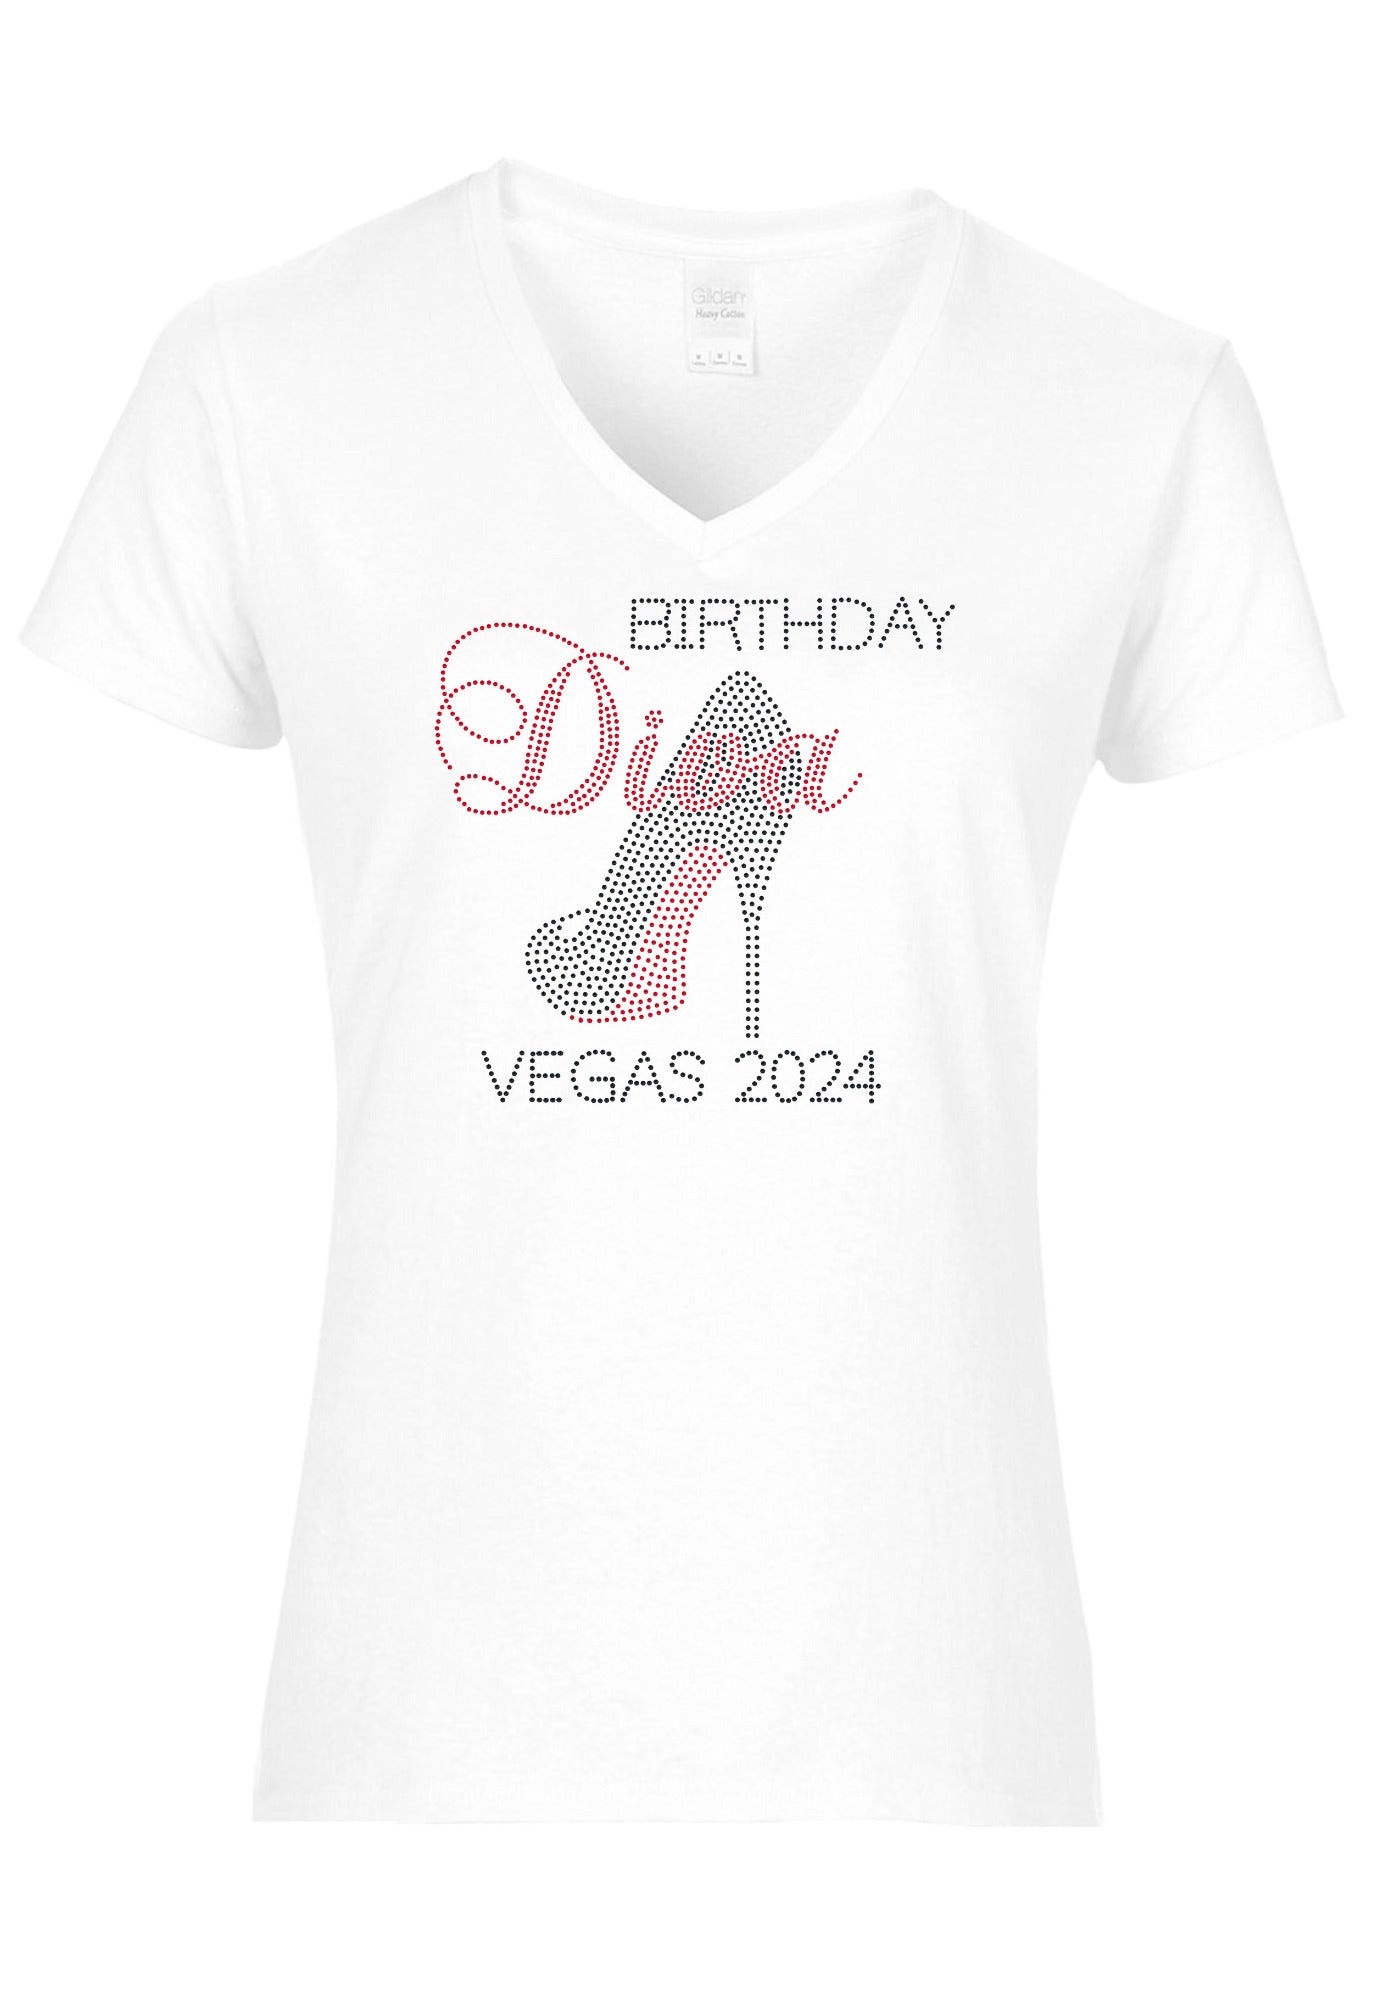 Birthday Diva Personalized City And Year Rhinestone T-Shirt